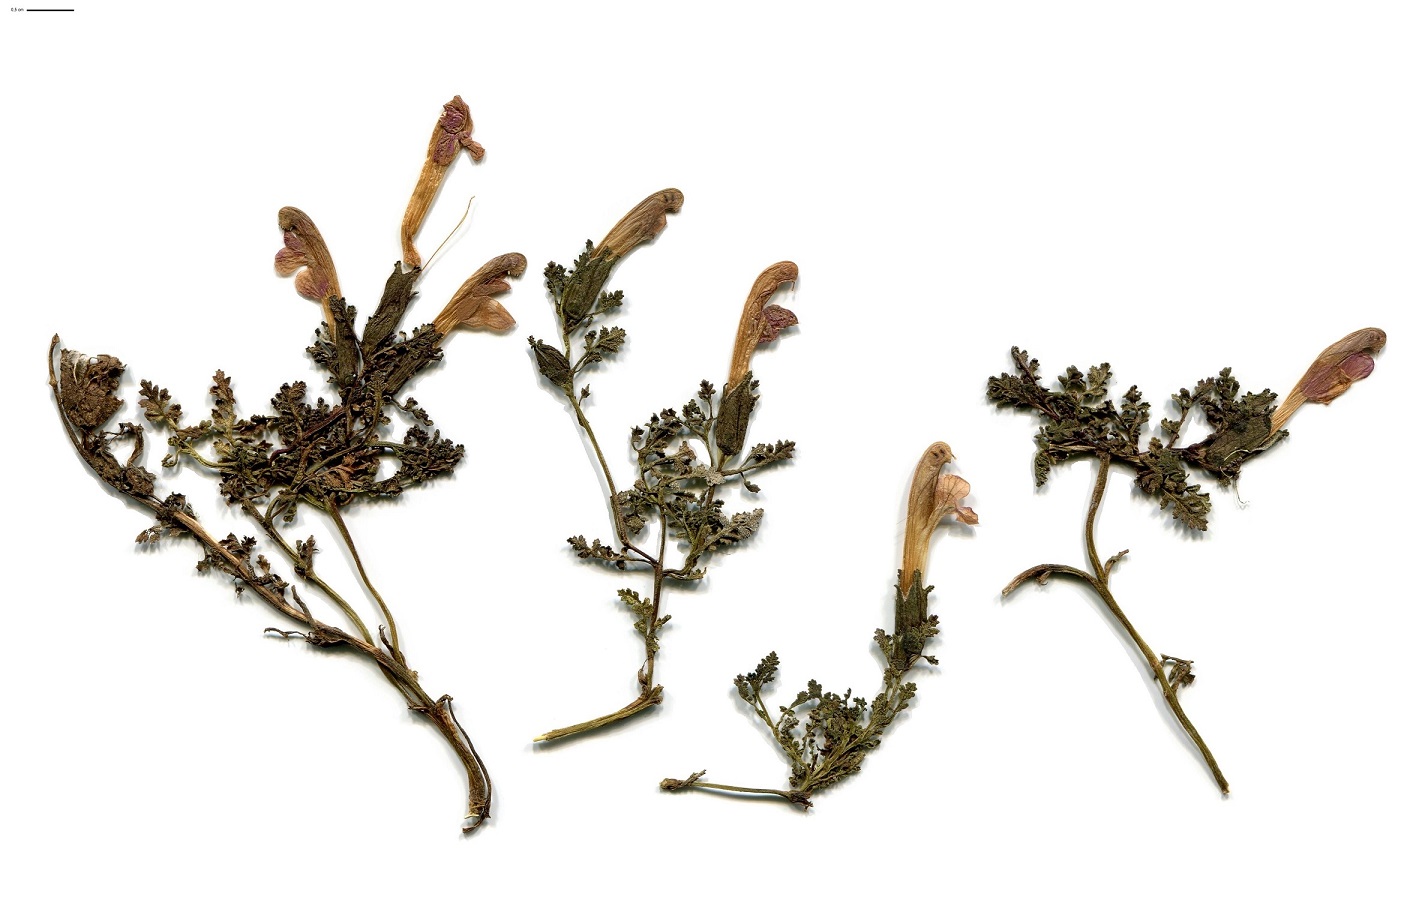 Pedicularis sylvatica subsp. sylvatica (Orobanchaceae)